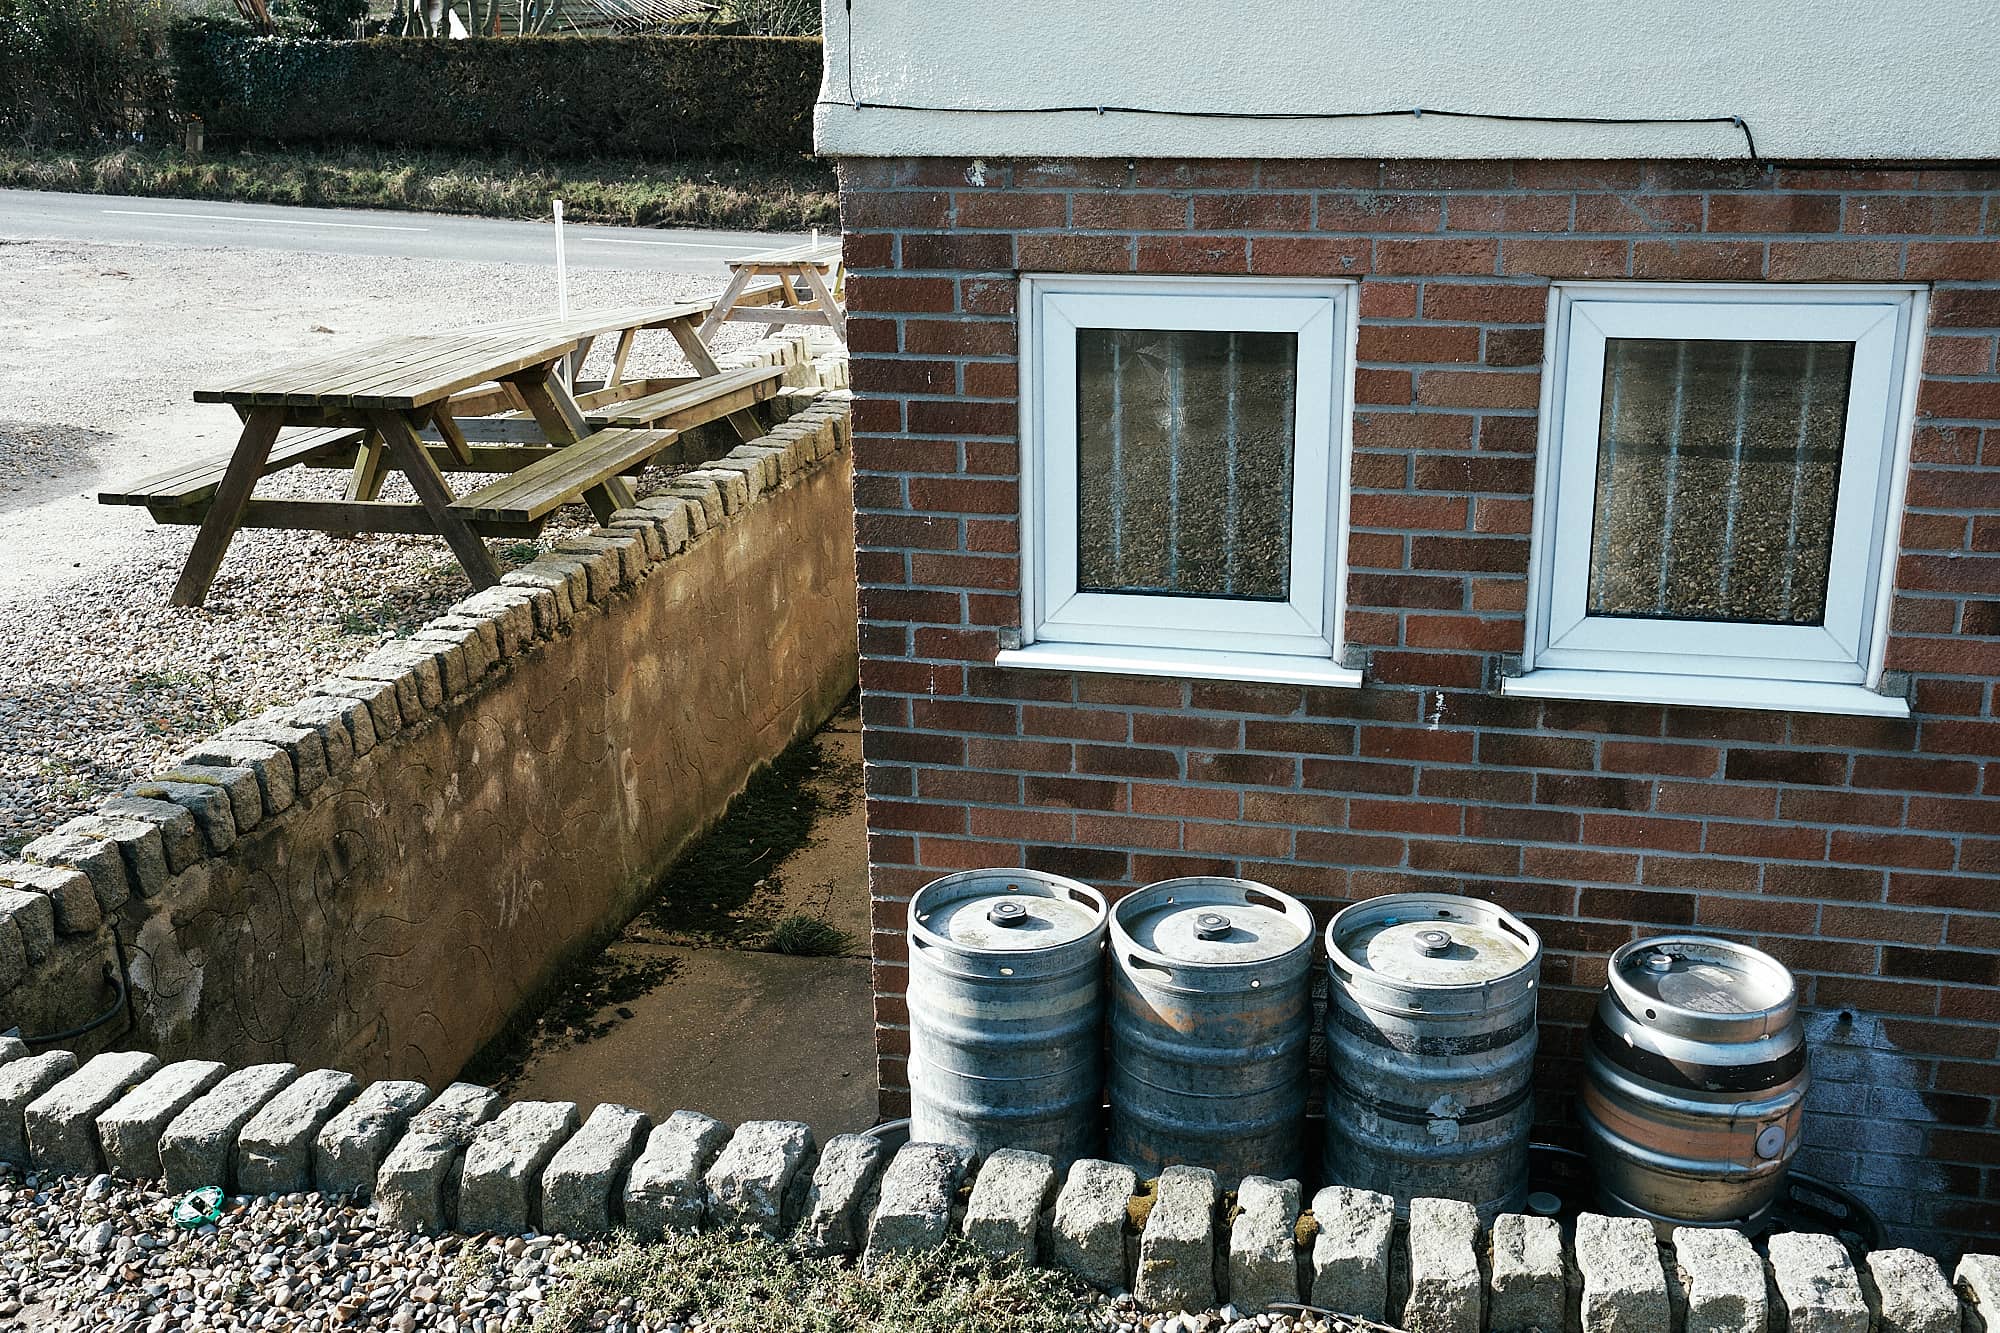 kegs behind a pub